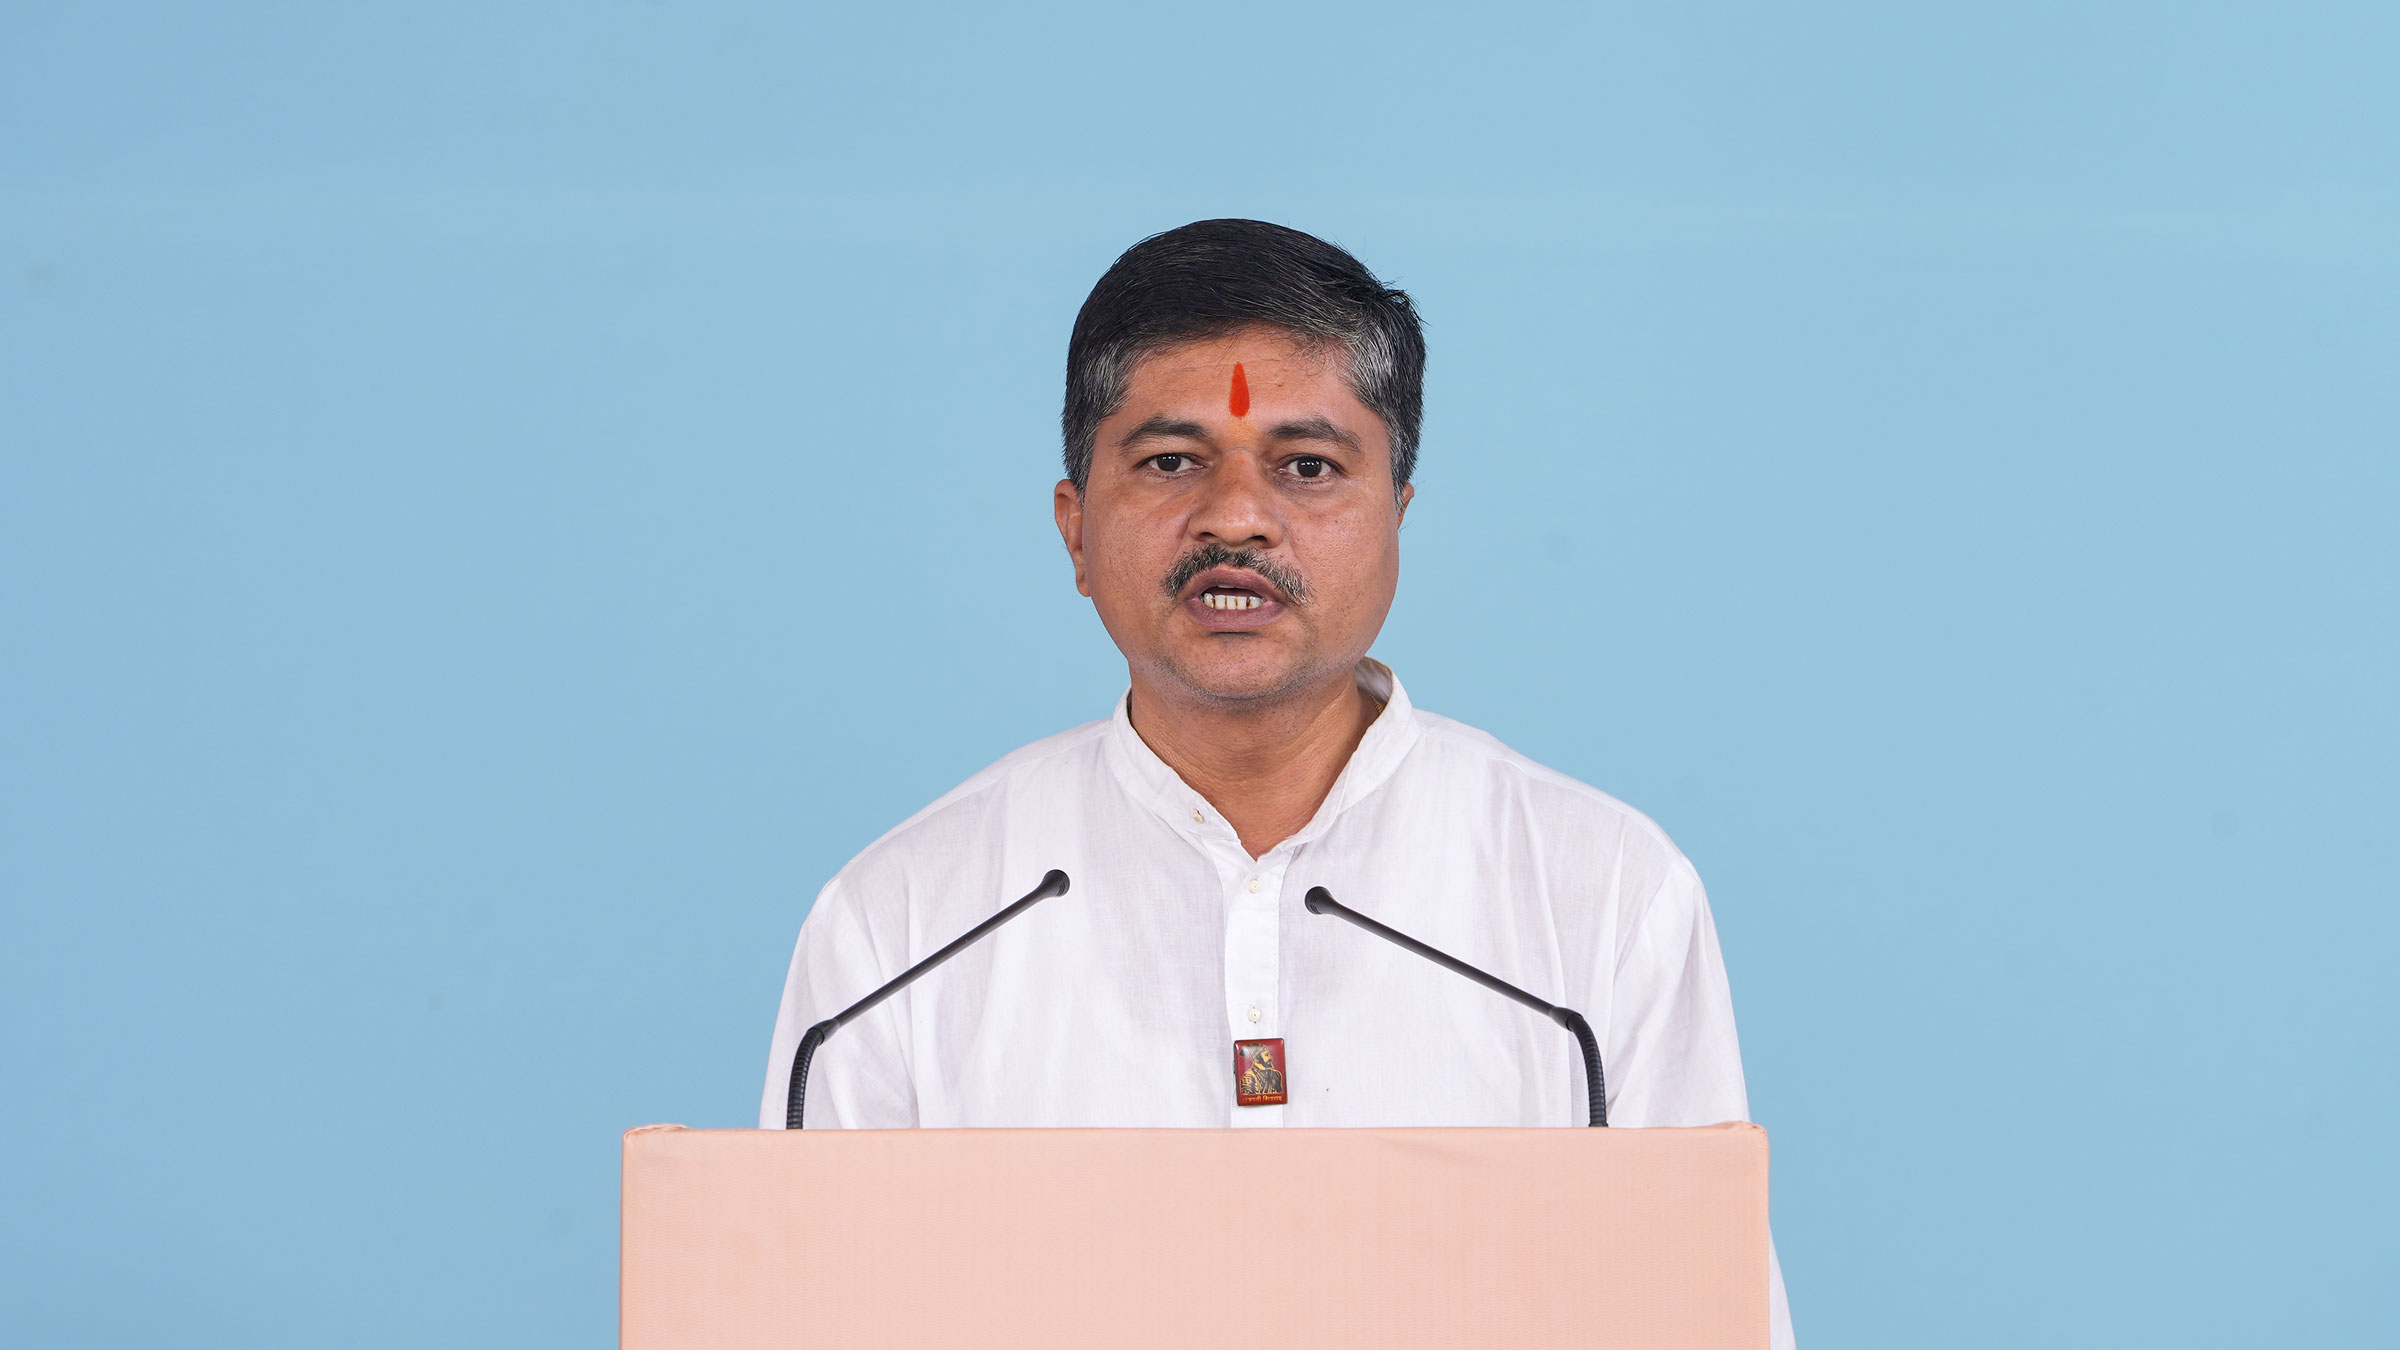 Dr. Nilesh Lonkar, President, Swatantryaveer Savarkar Yuva Vichar Manch, Pune, Maharashtra